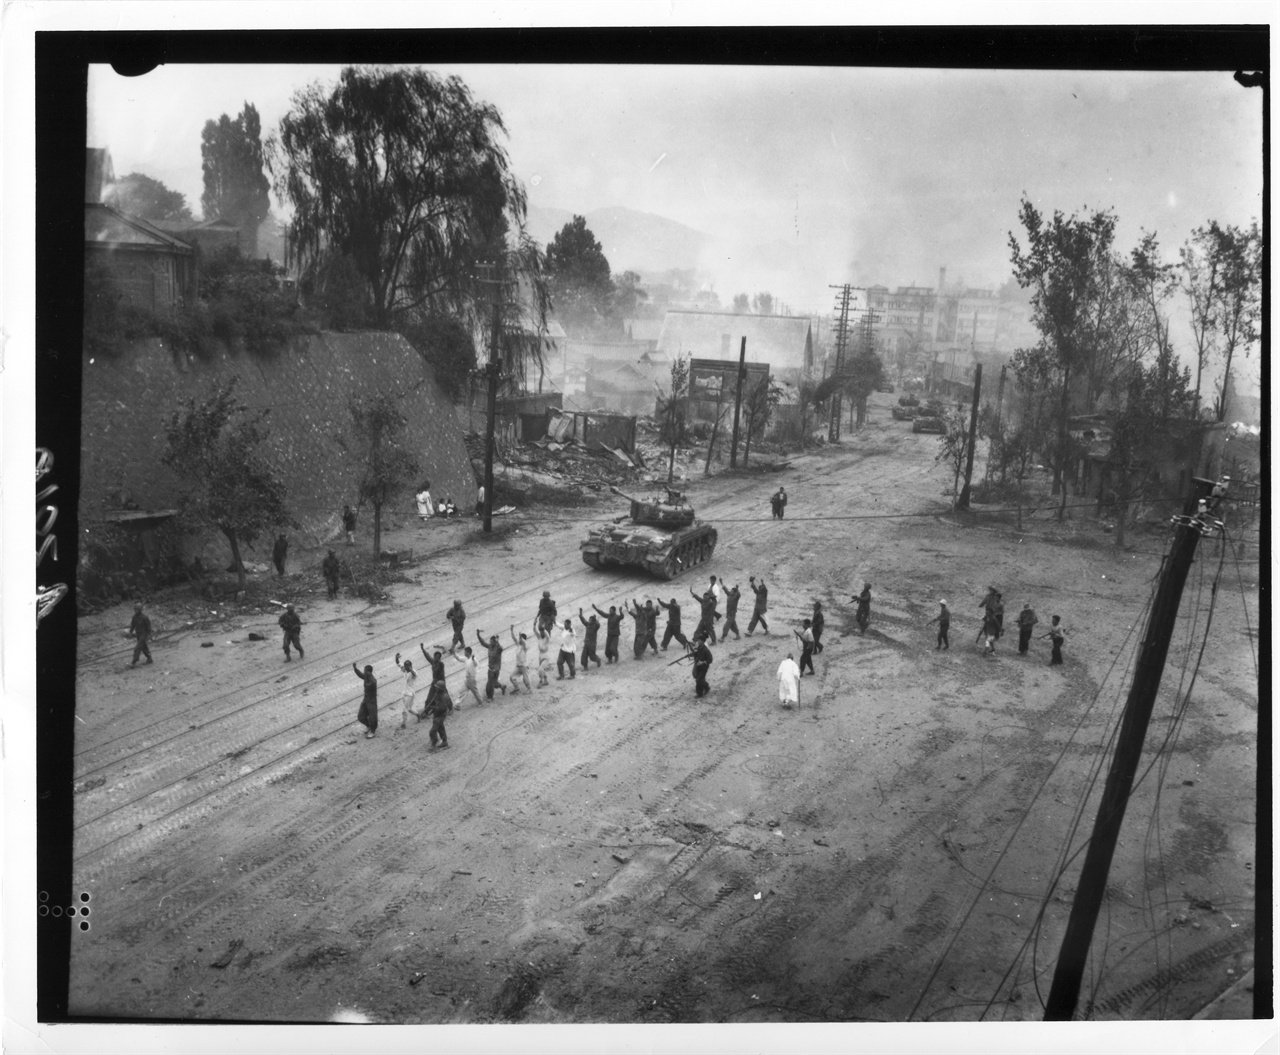  1950. 9. 26. 유엔군들이 서울 수복을 하면서 인민군 및 공산 혐의자를 색출한 뒤 연행하고 있다. 